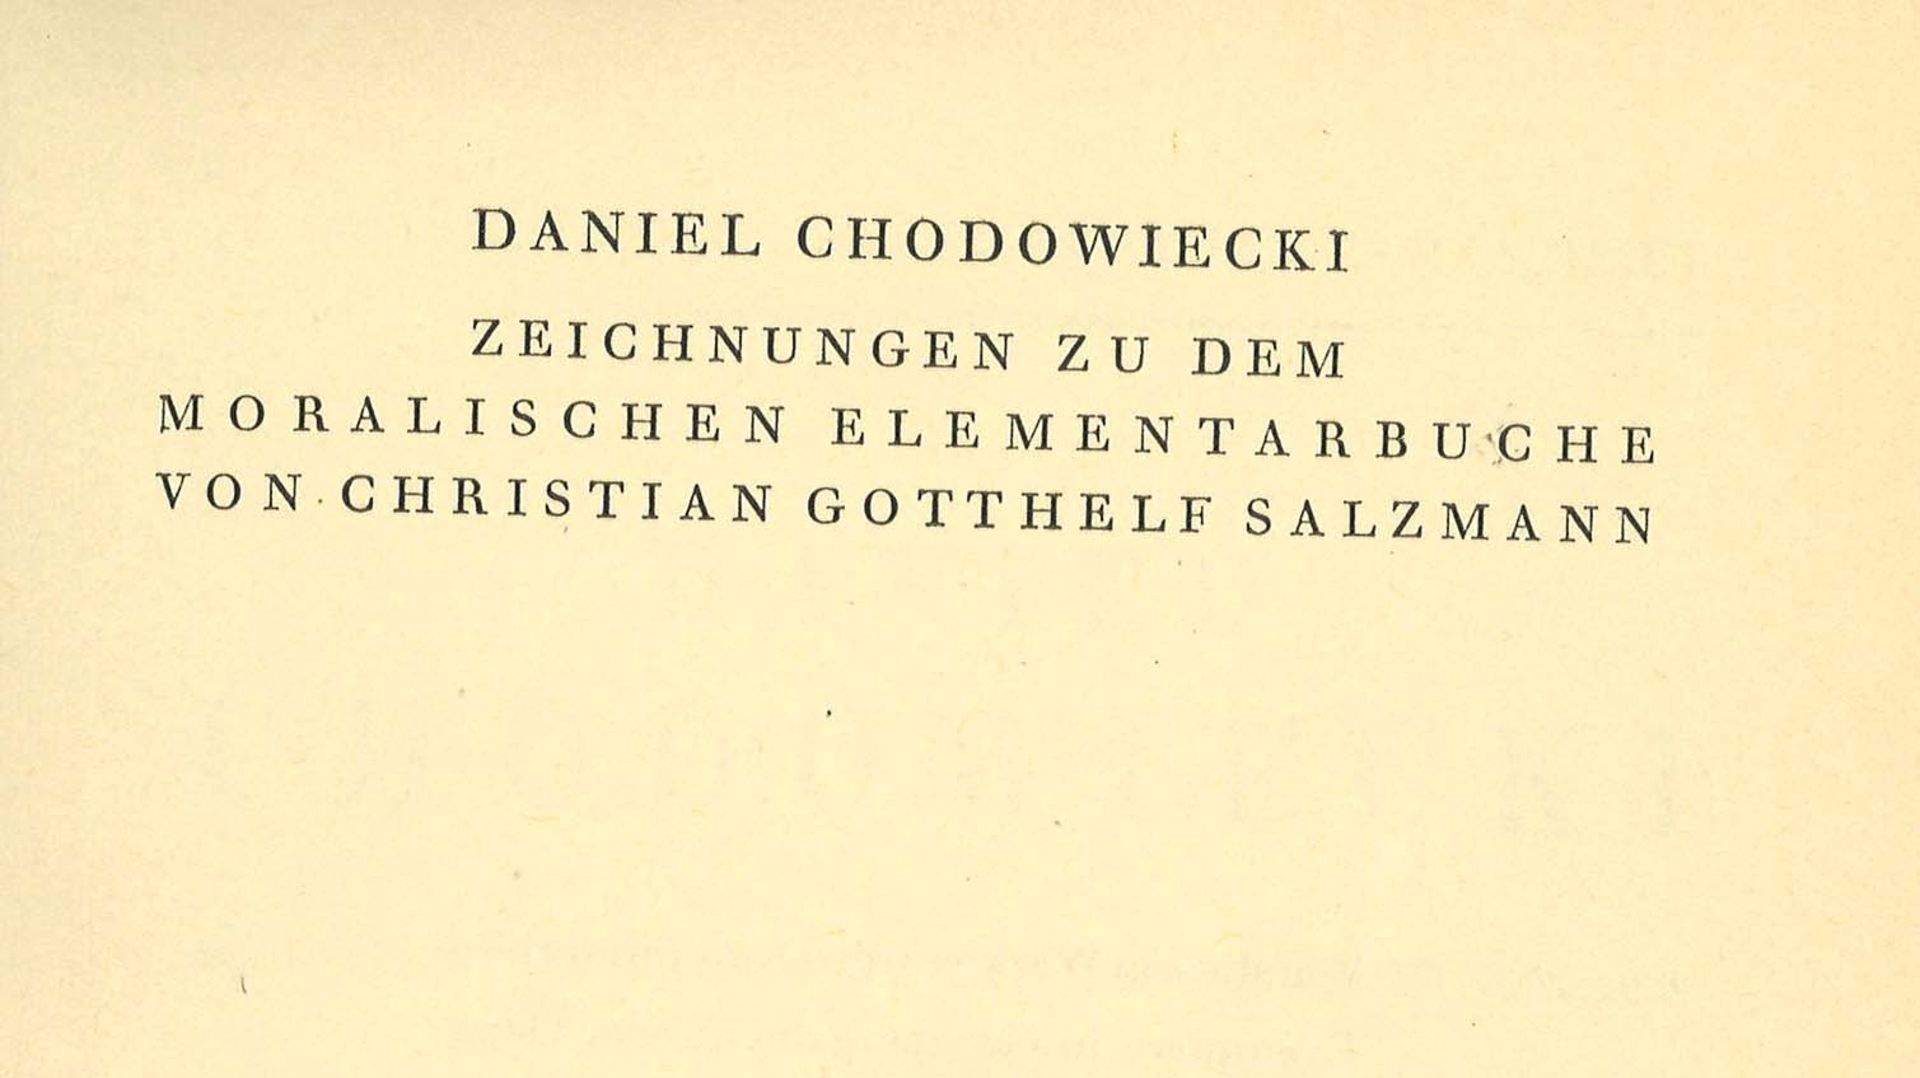 Daniel Chodowiecki, 25 bisher unveröffentliche Handzeichnungen zu dem moralischen Elementarbuche von